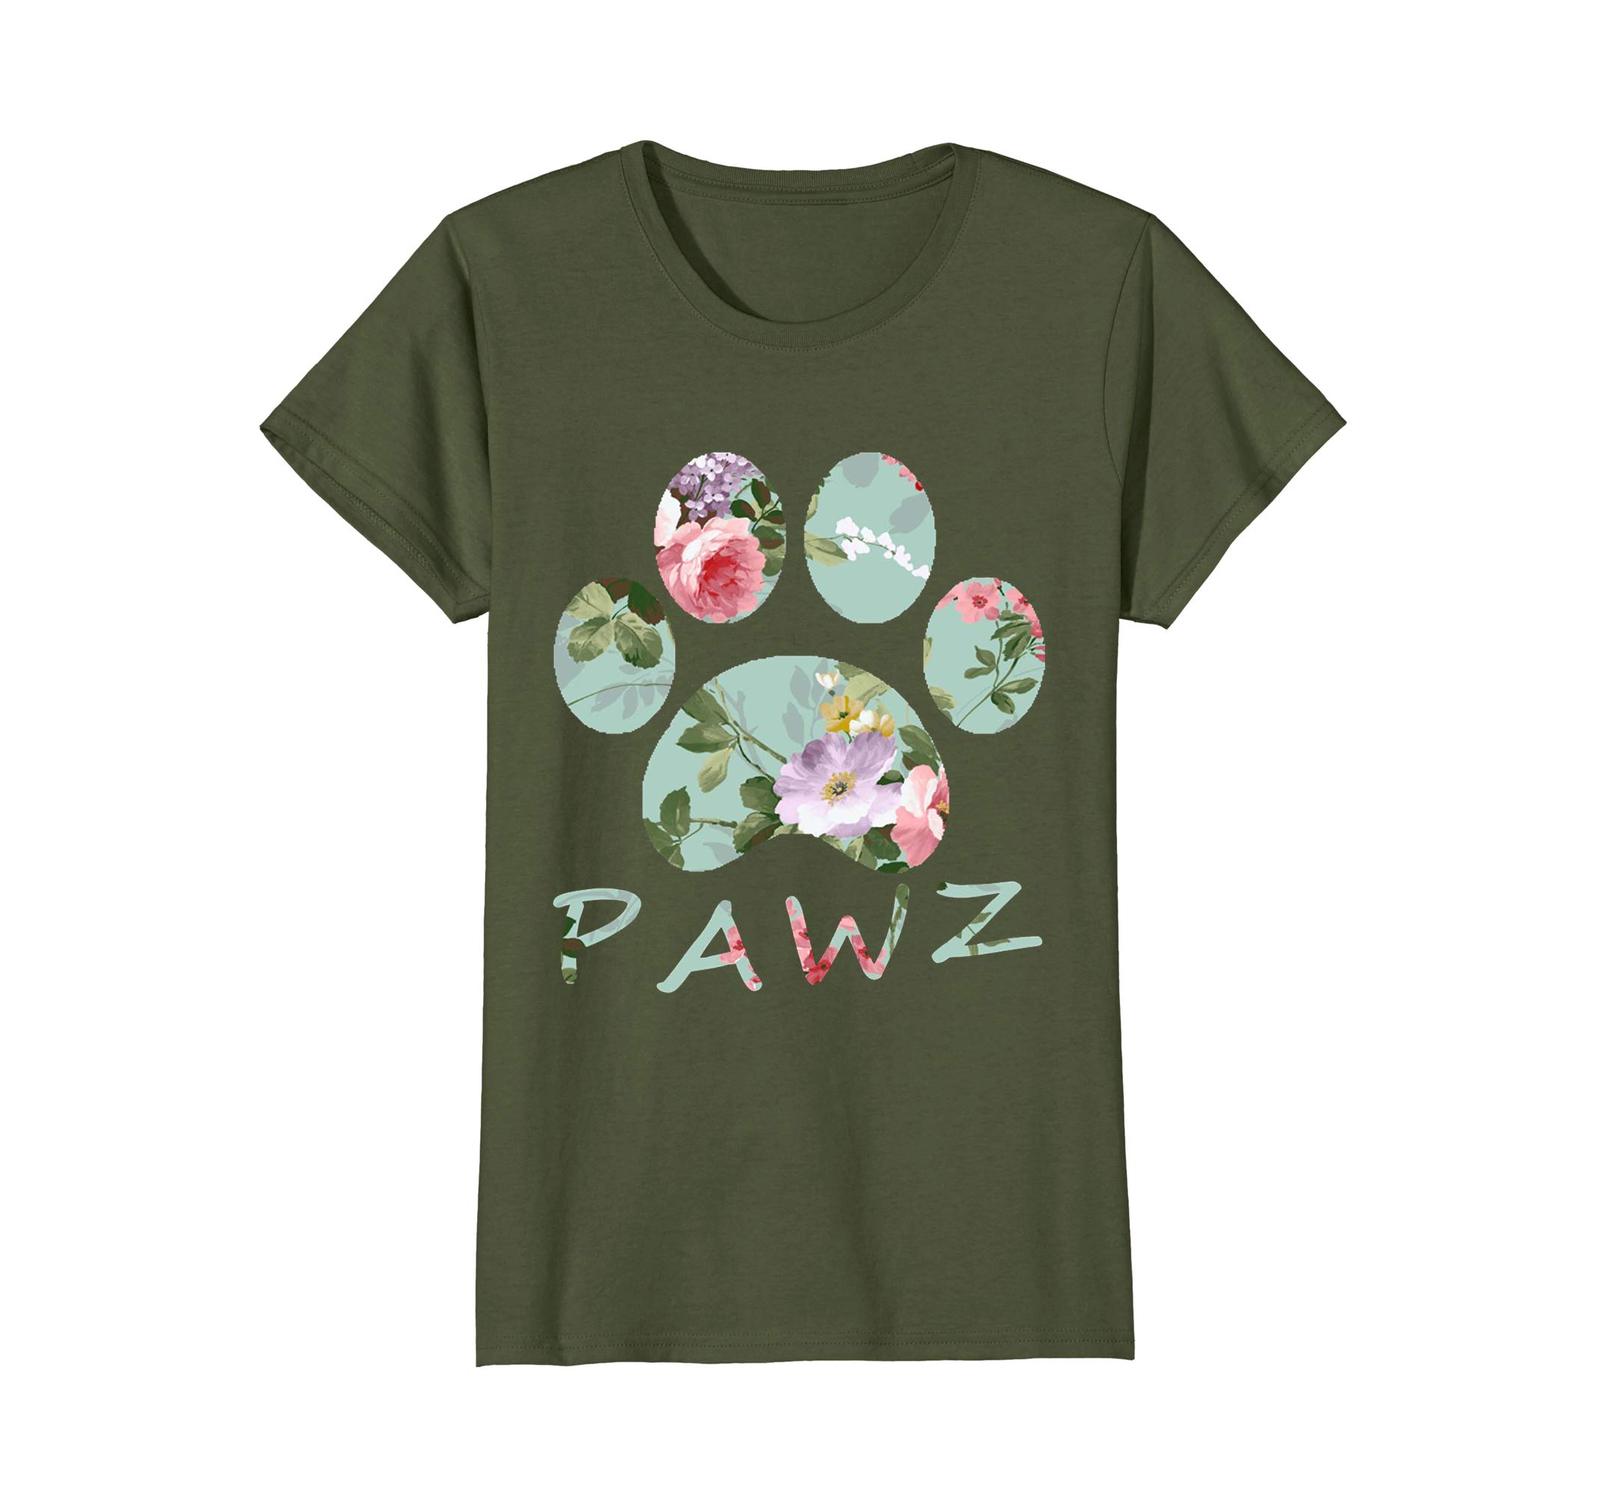 Dog Fashion - The Pet The Dog The Pawz T-Shirt Wowen